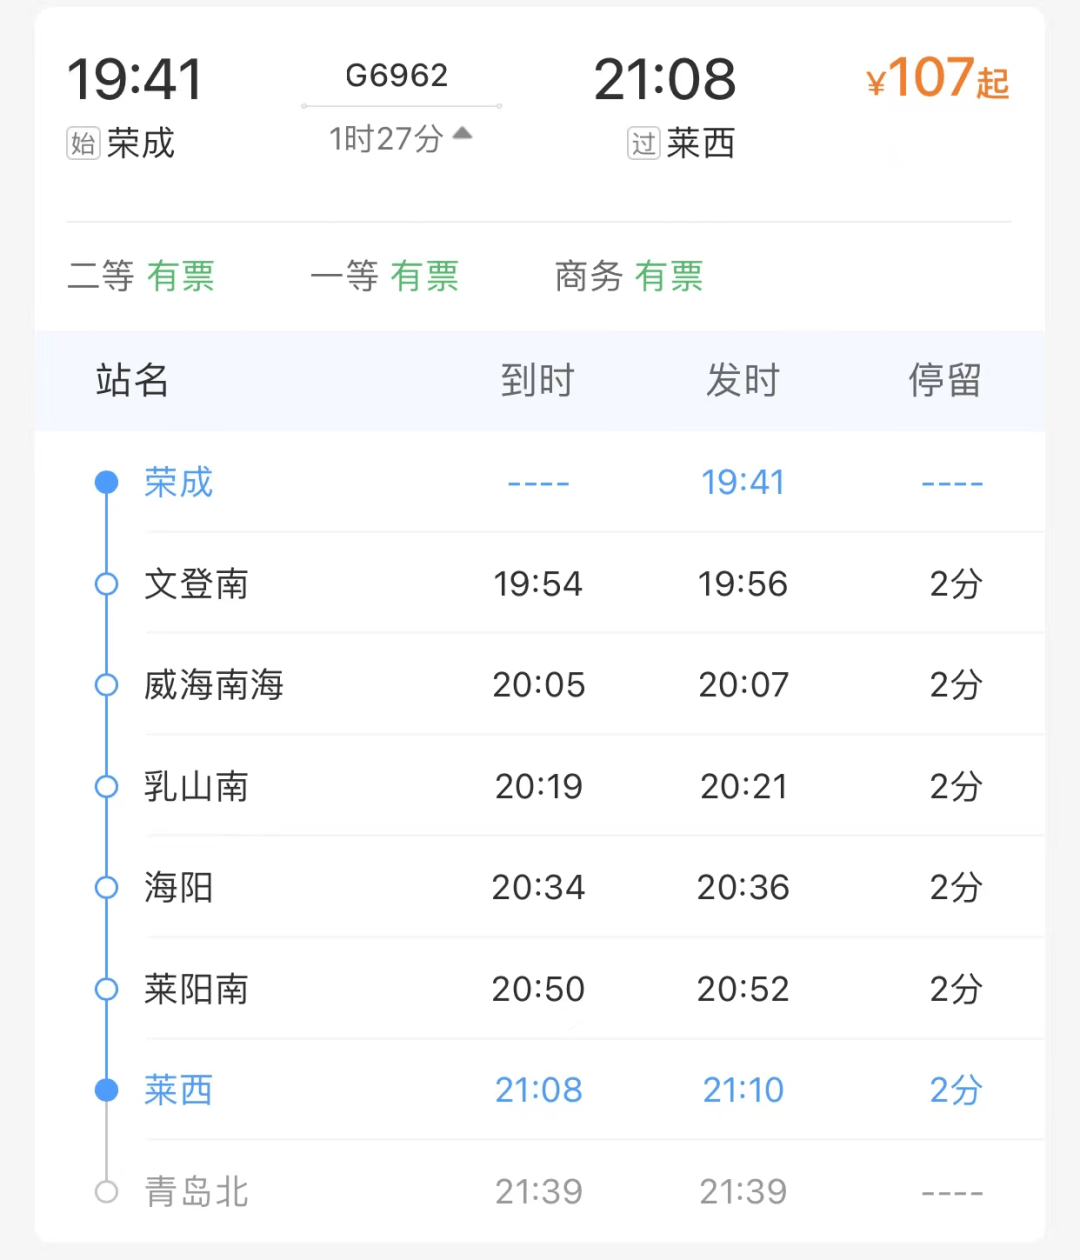 荣成至济南西,青岛间最快运行时间将较目前的3小时50分,2小时27分缩短